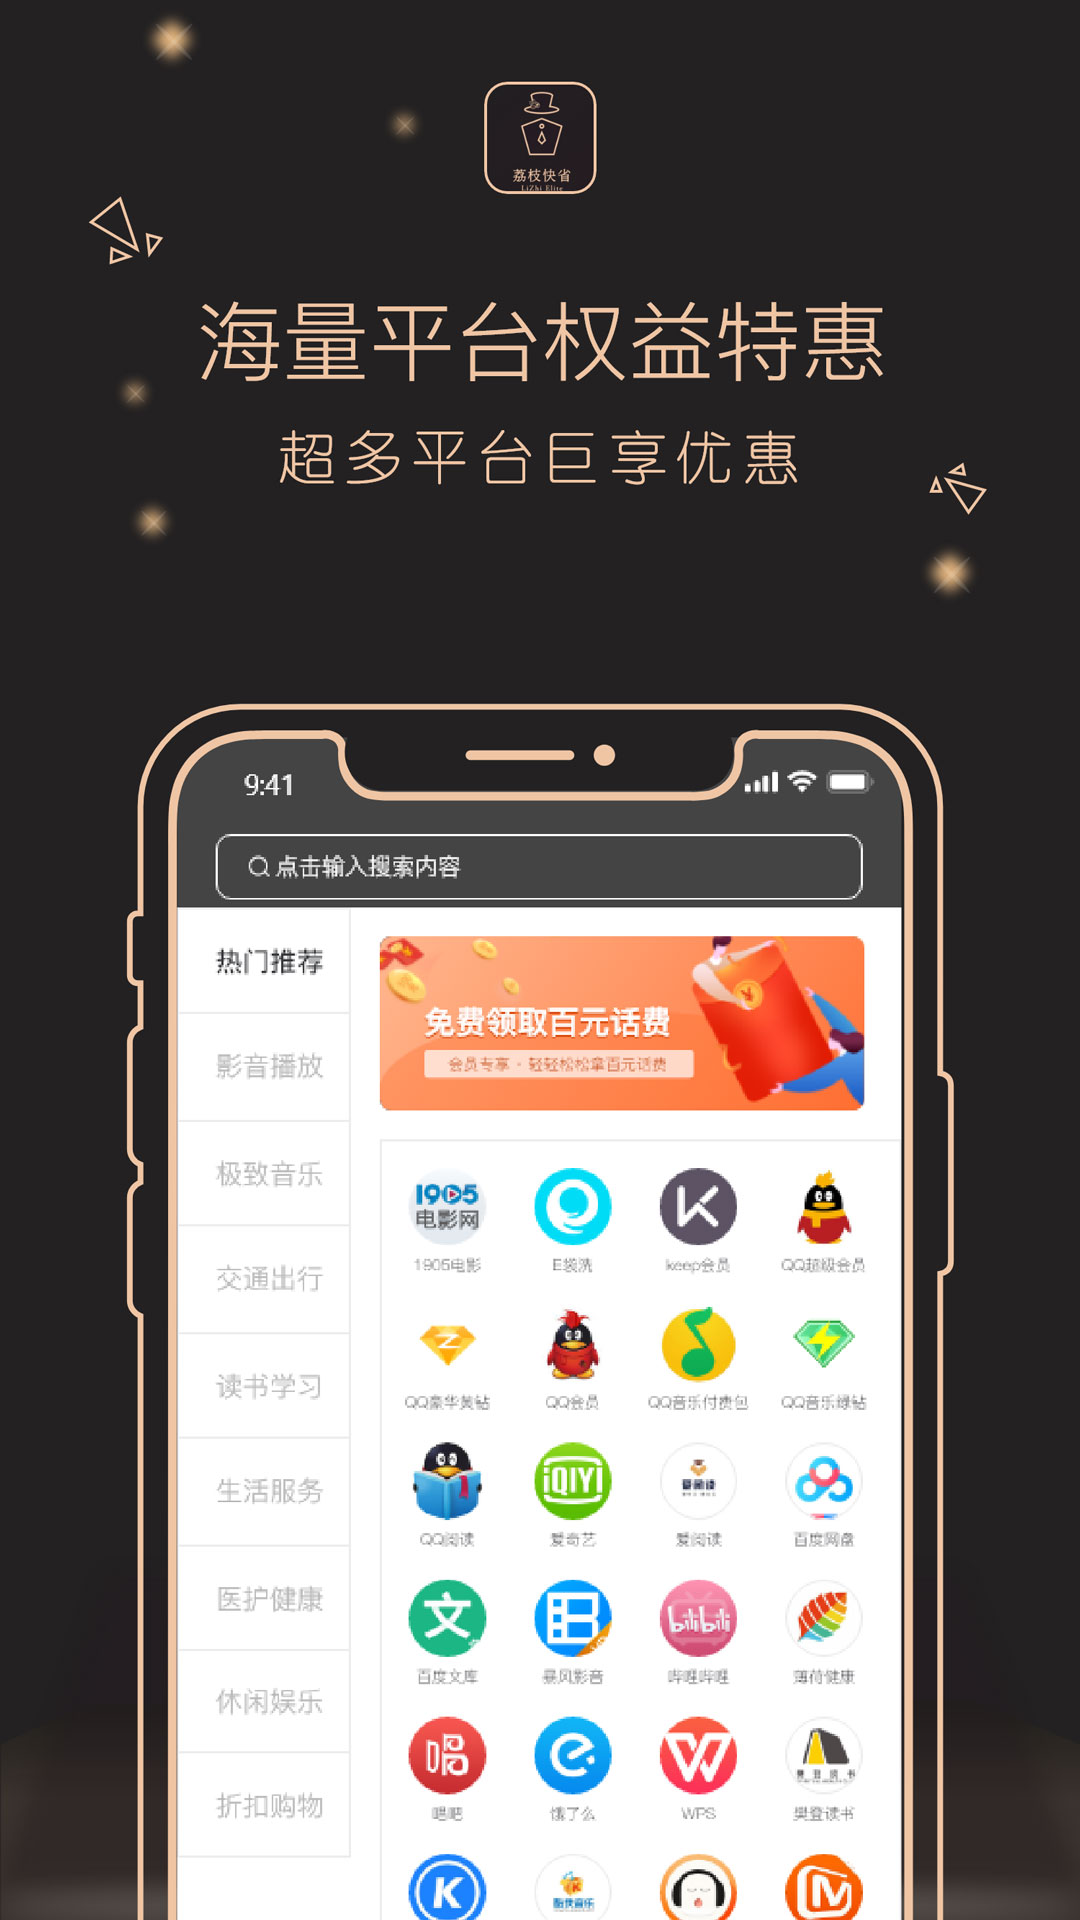 荔枝新闻下载手机版荔枝网广东电视台app下载